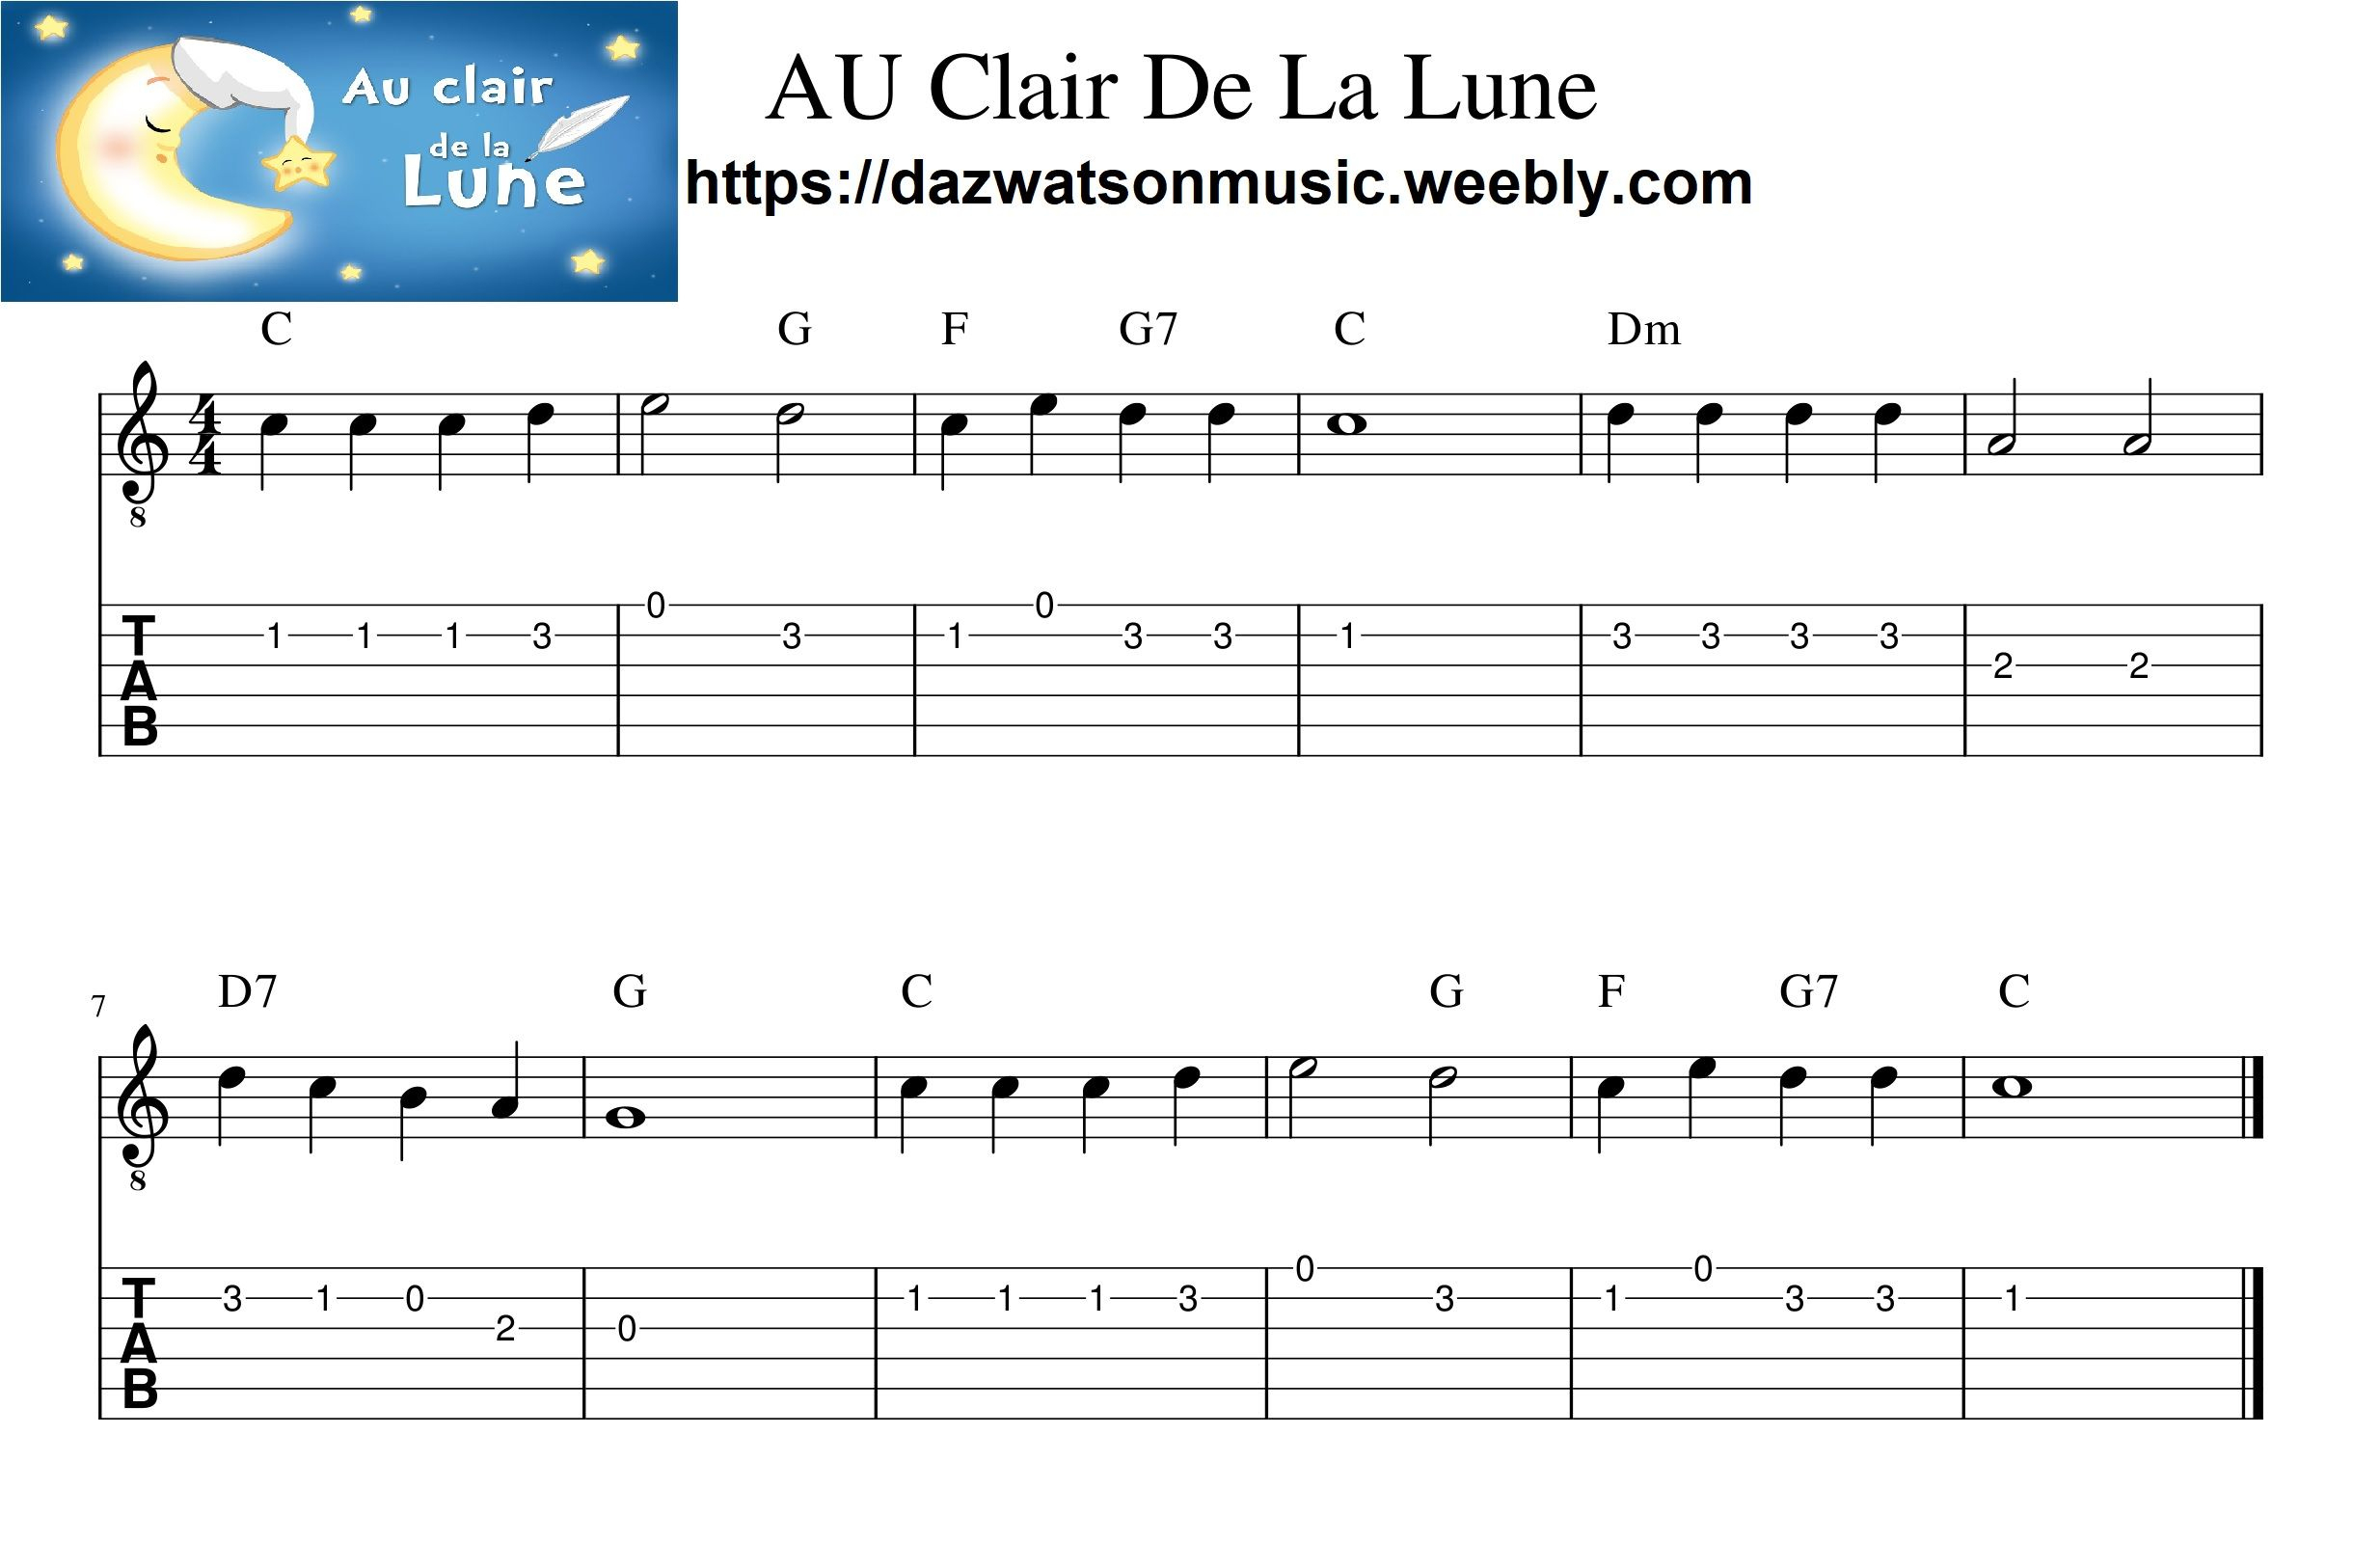 Top Au Clair De La Lune Guitare in the world Learn more here!